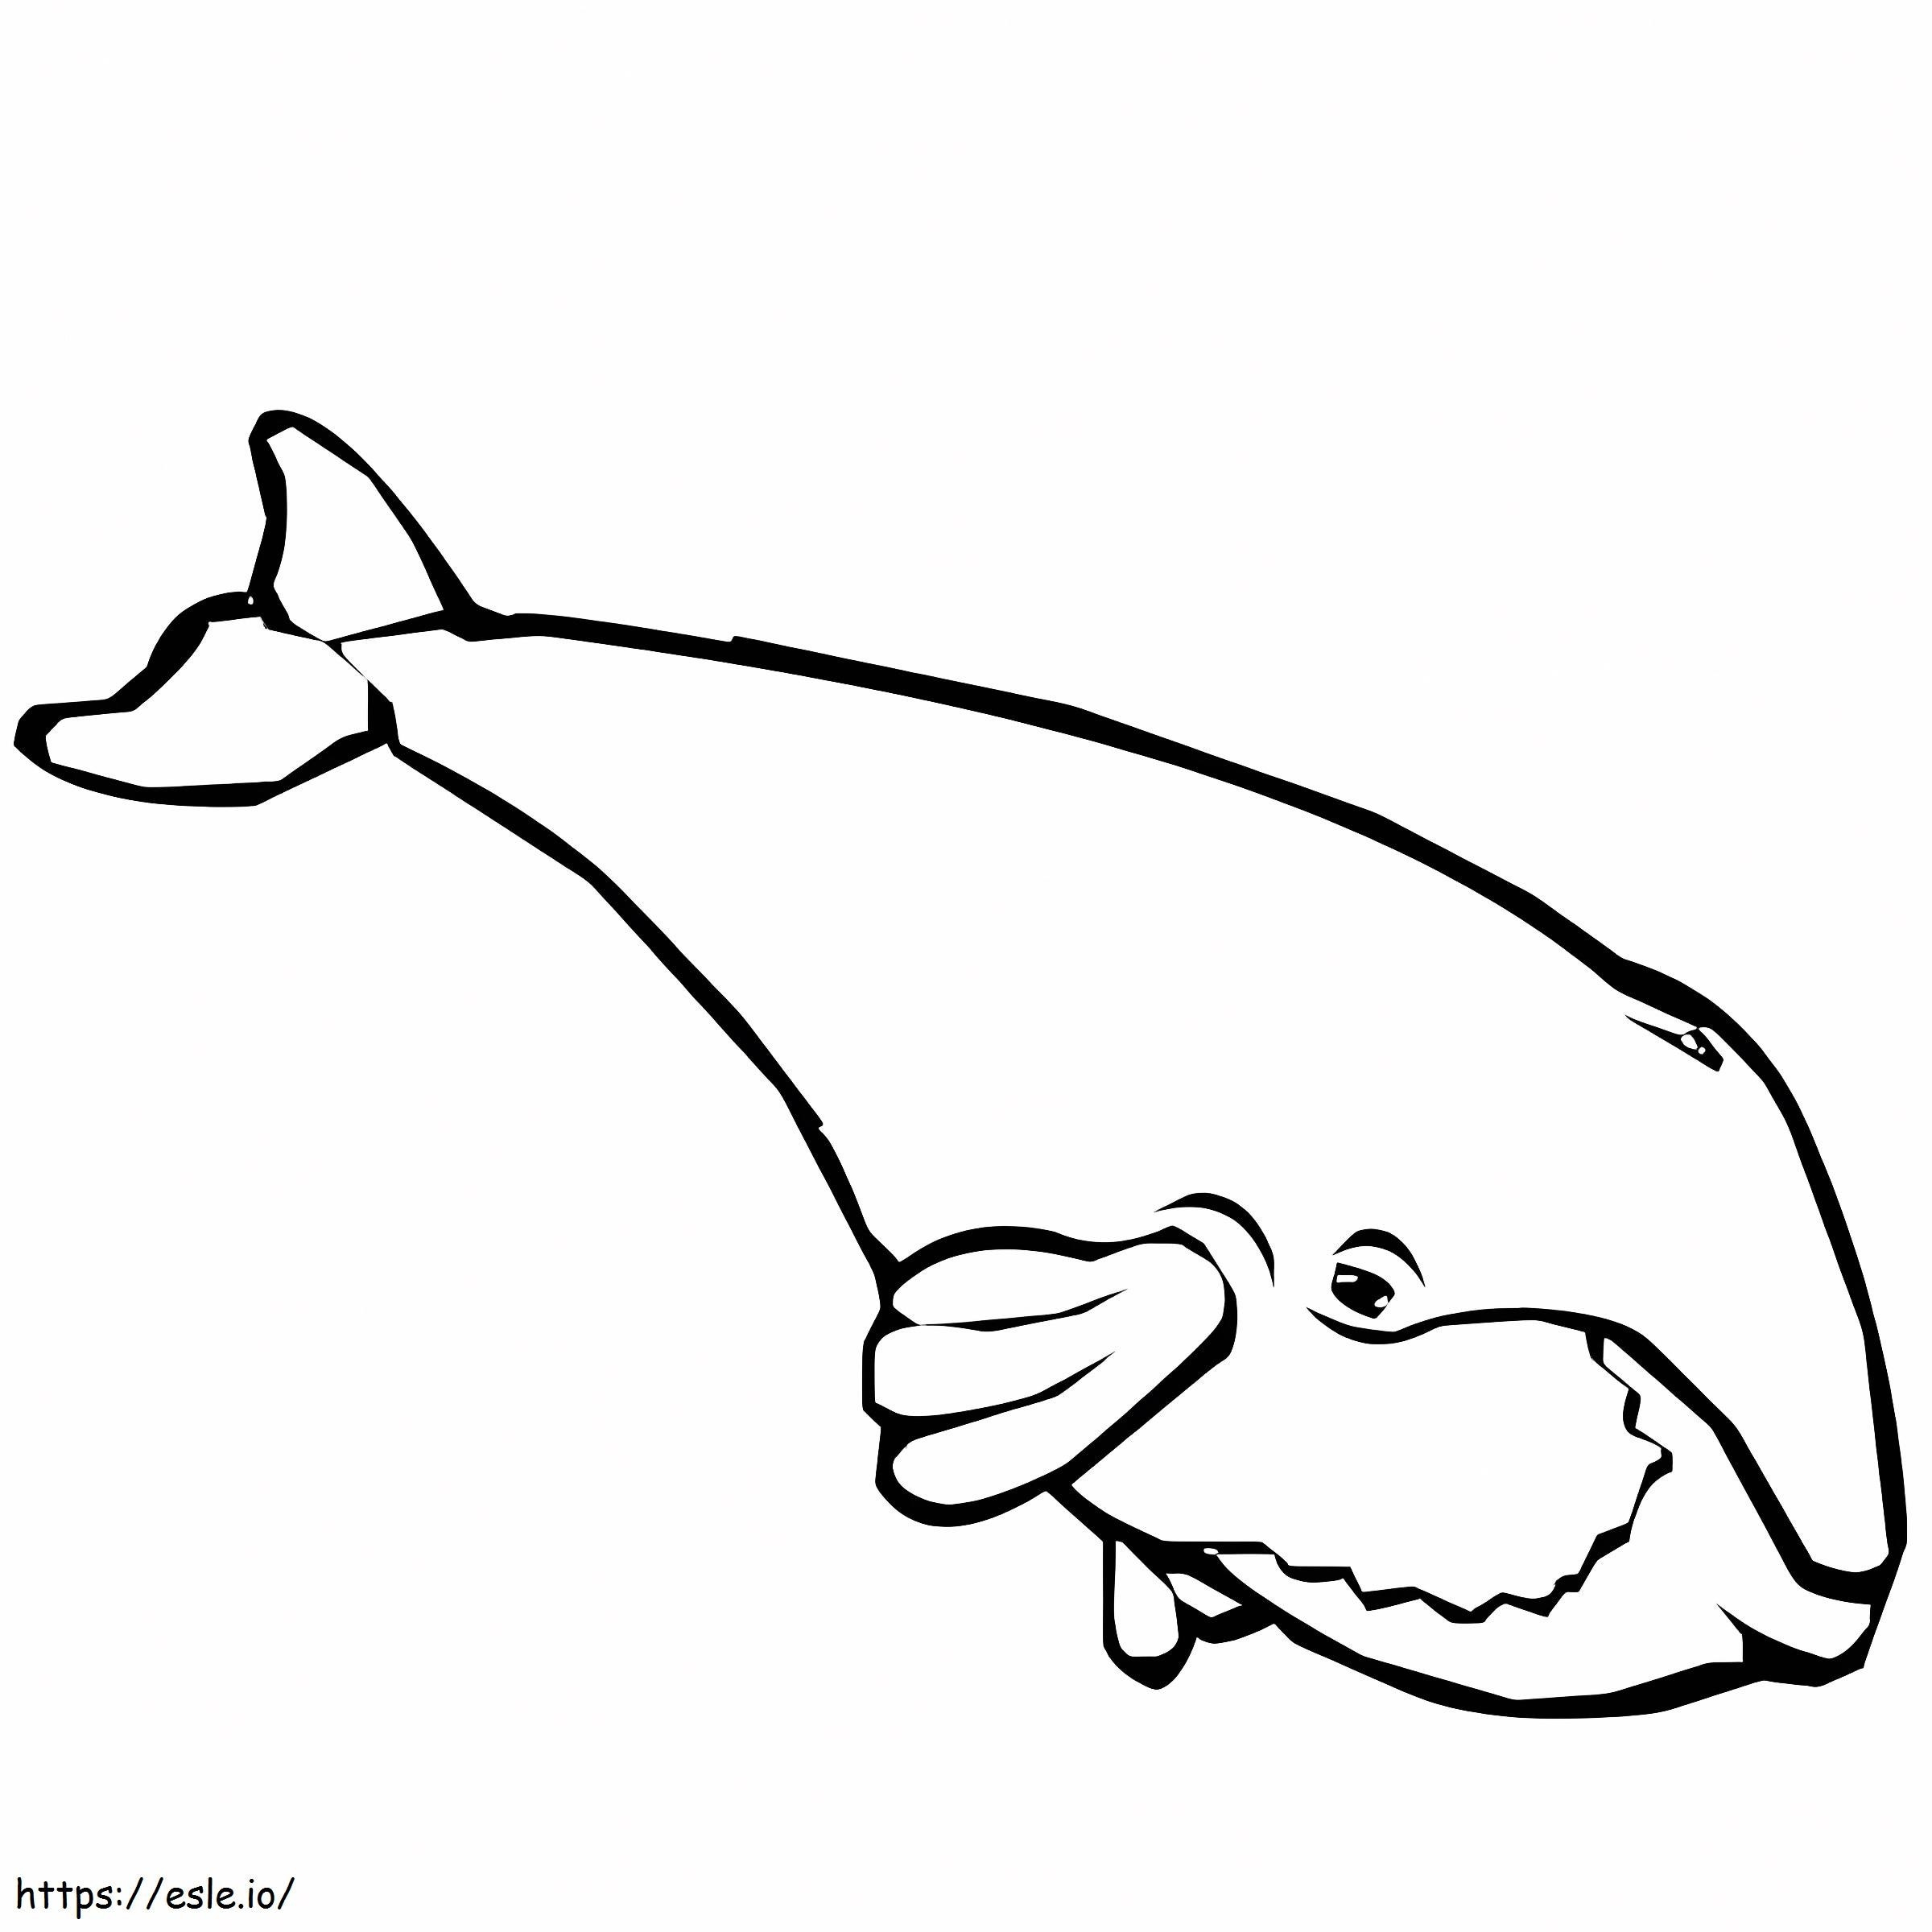 Balena di disegno semplice da colorare